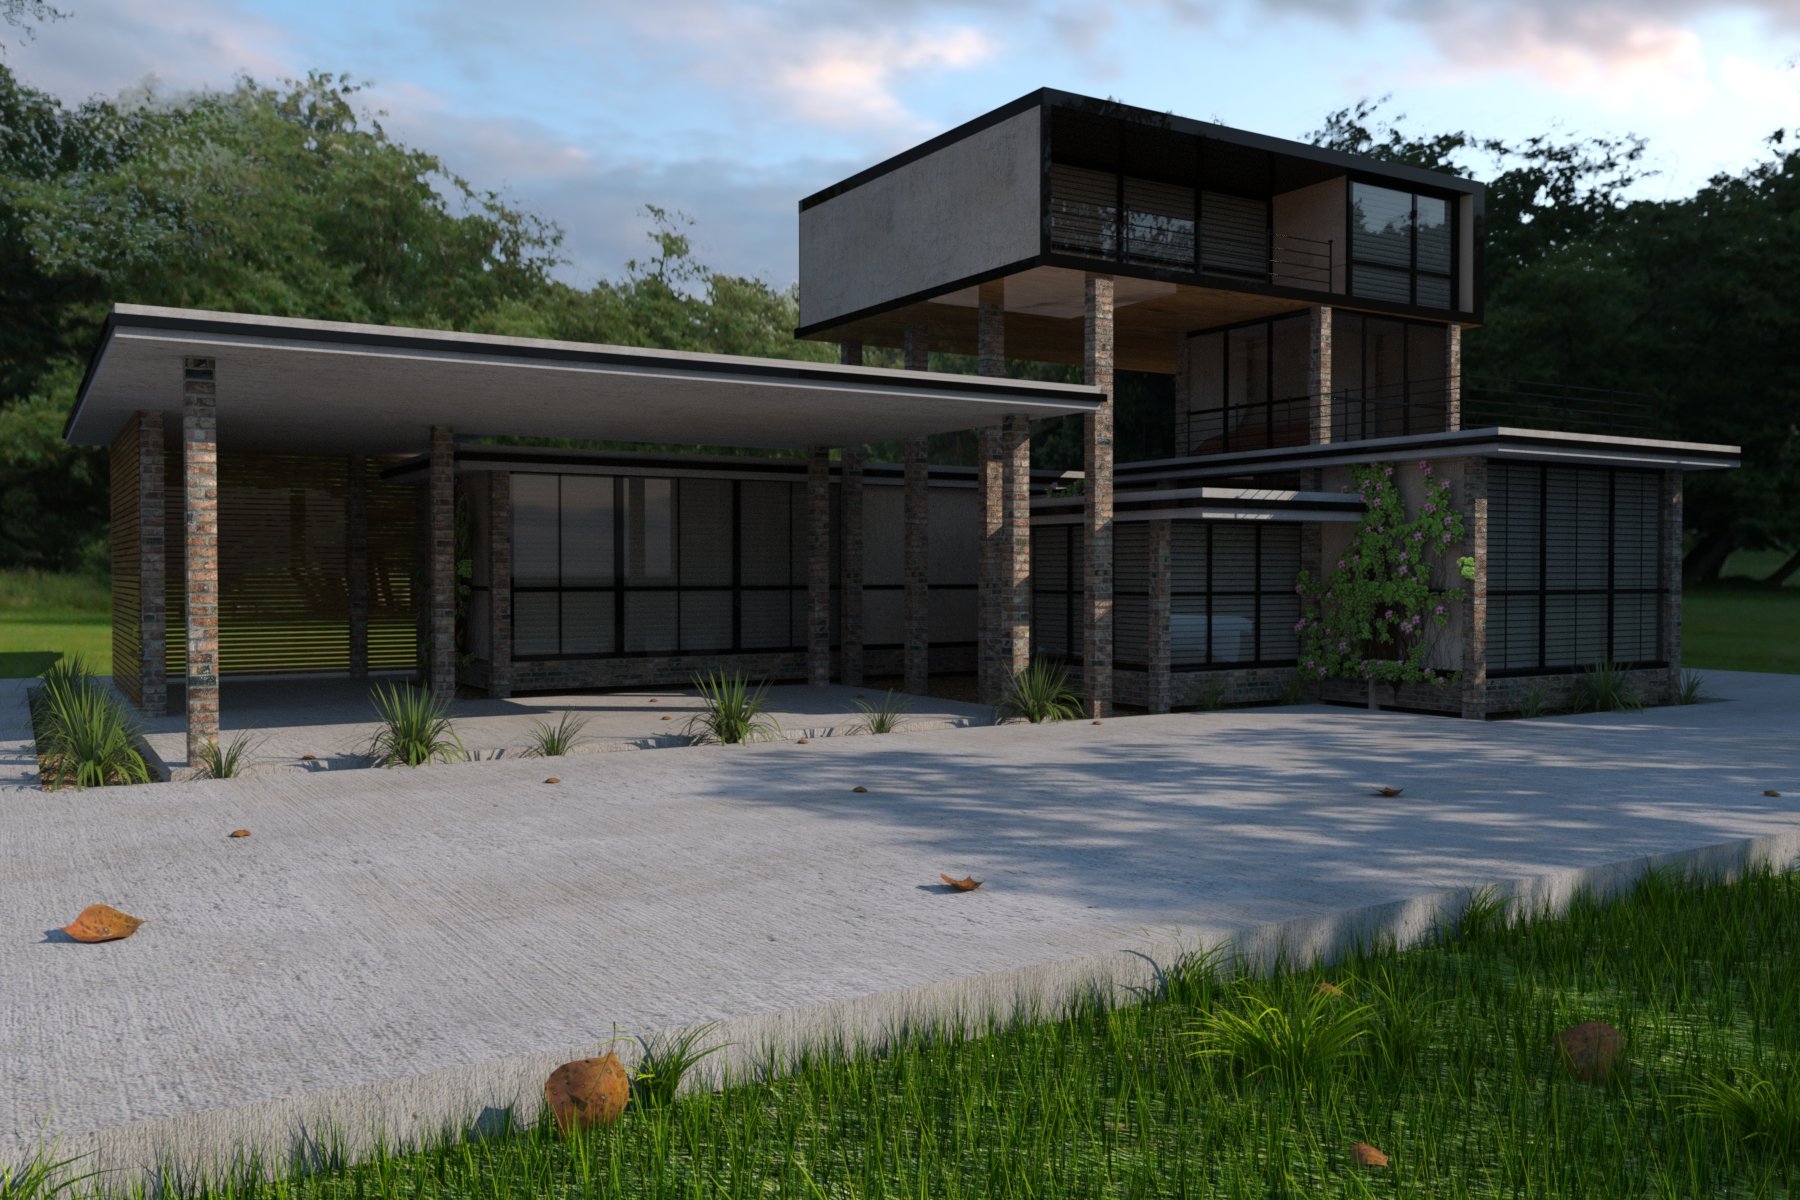 Modular Home Builder by: ImagineX, 3D Models by Daz 3D